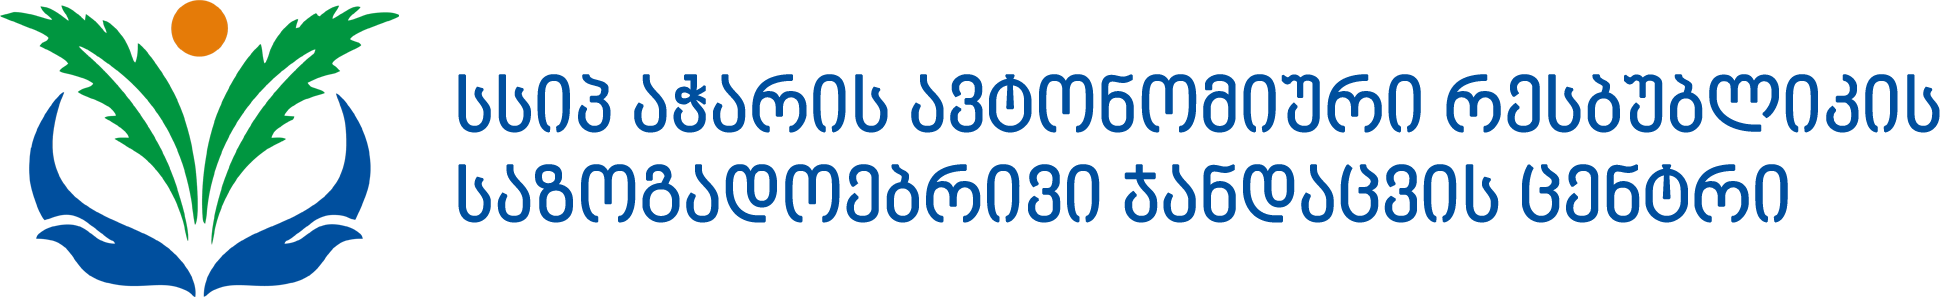 phc.ge logo